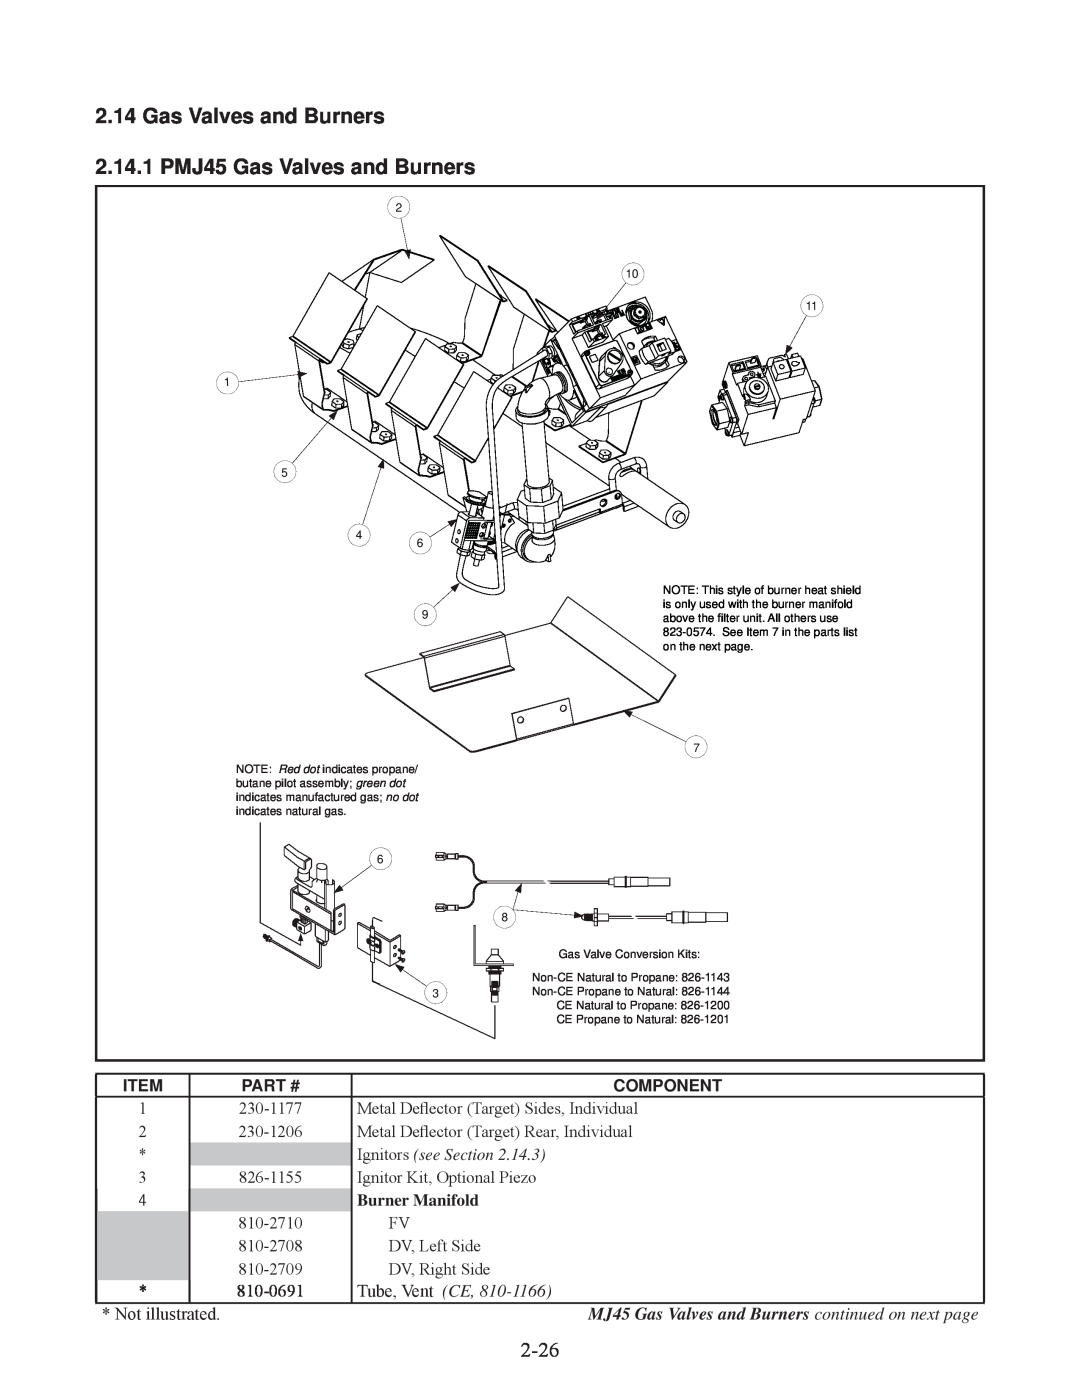 Frymaster 35 manual 2.14.1 PMJ45 Gas Valves and Burners, Part #, Component, Burner Manifold 